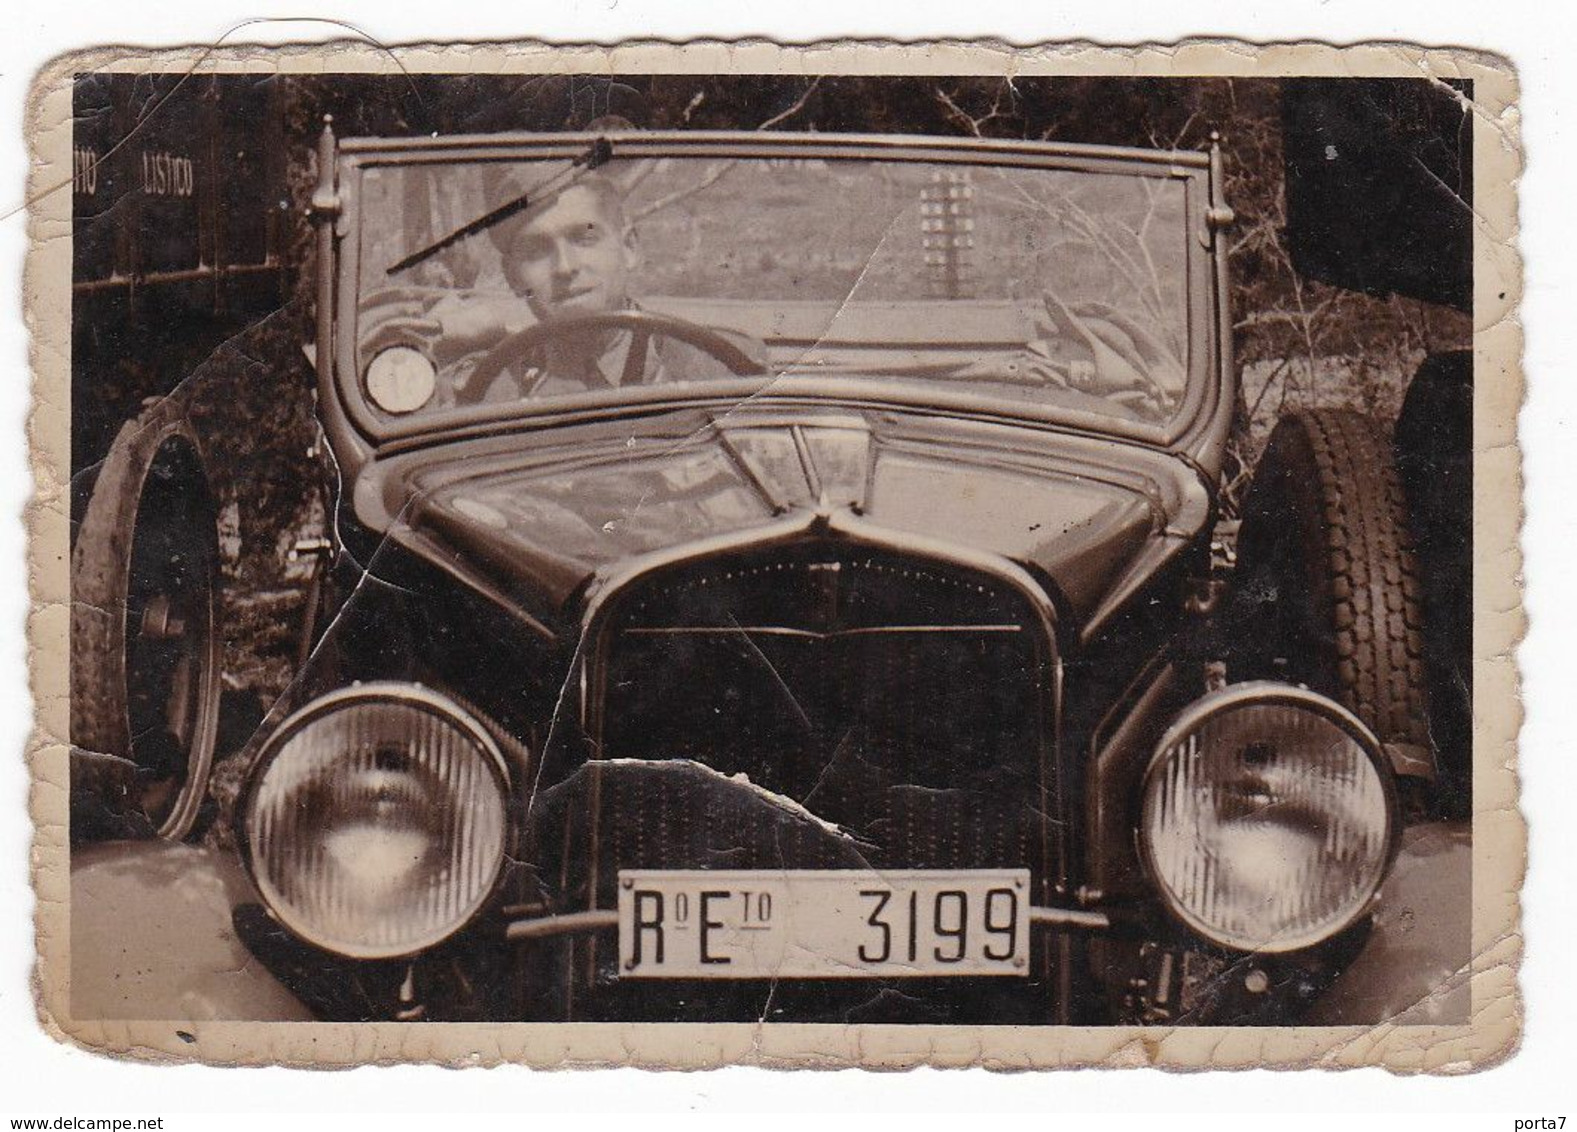 AUTOMOBILE NON IDENTIFICATA  - CAR  - TARGA  REGIO ESERCITO - FOTO ORIGINALE 1940 - Automobili